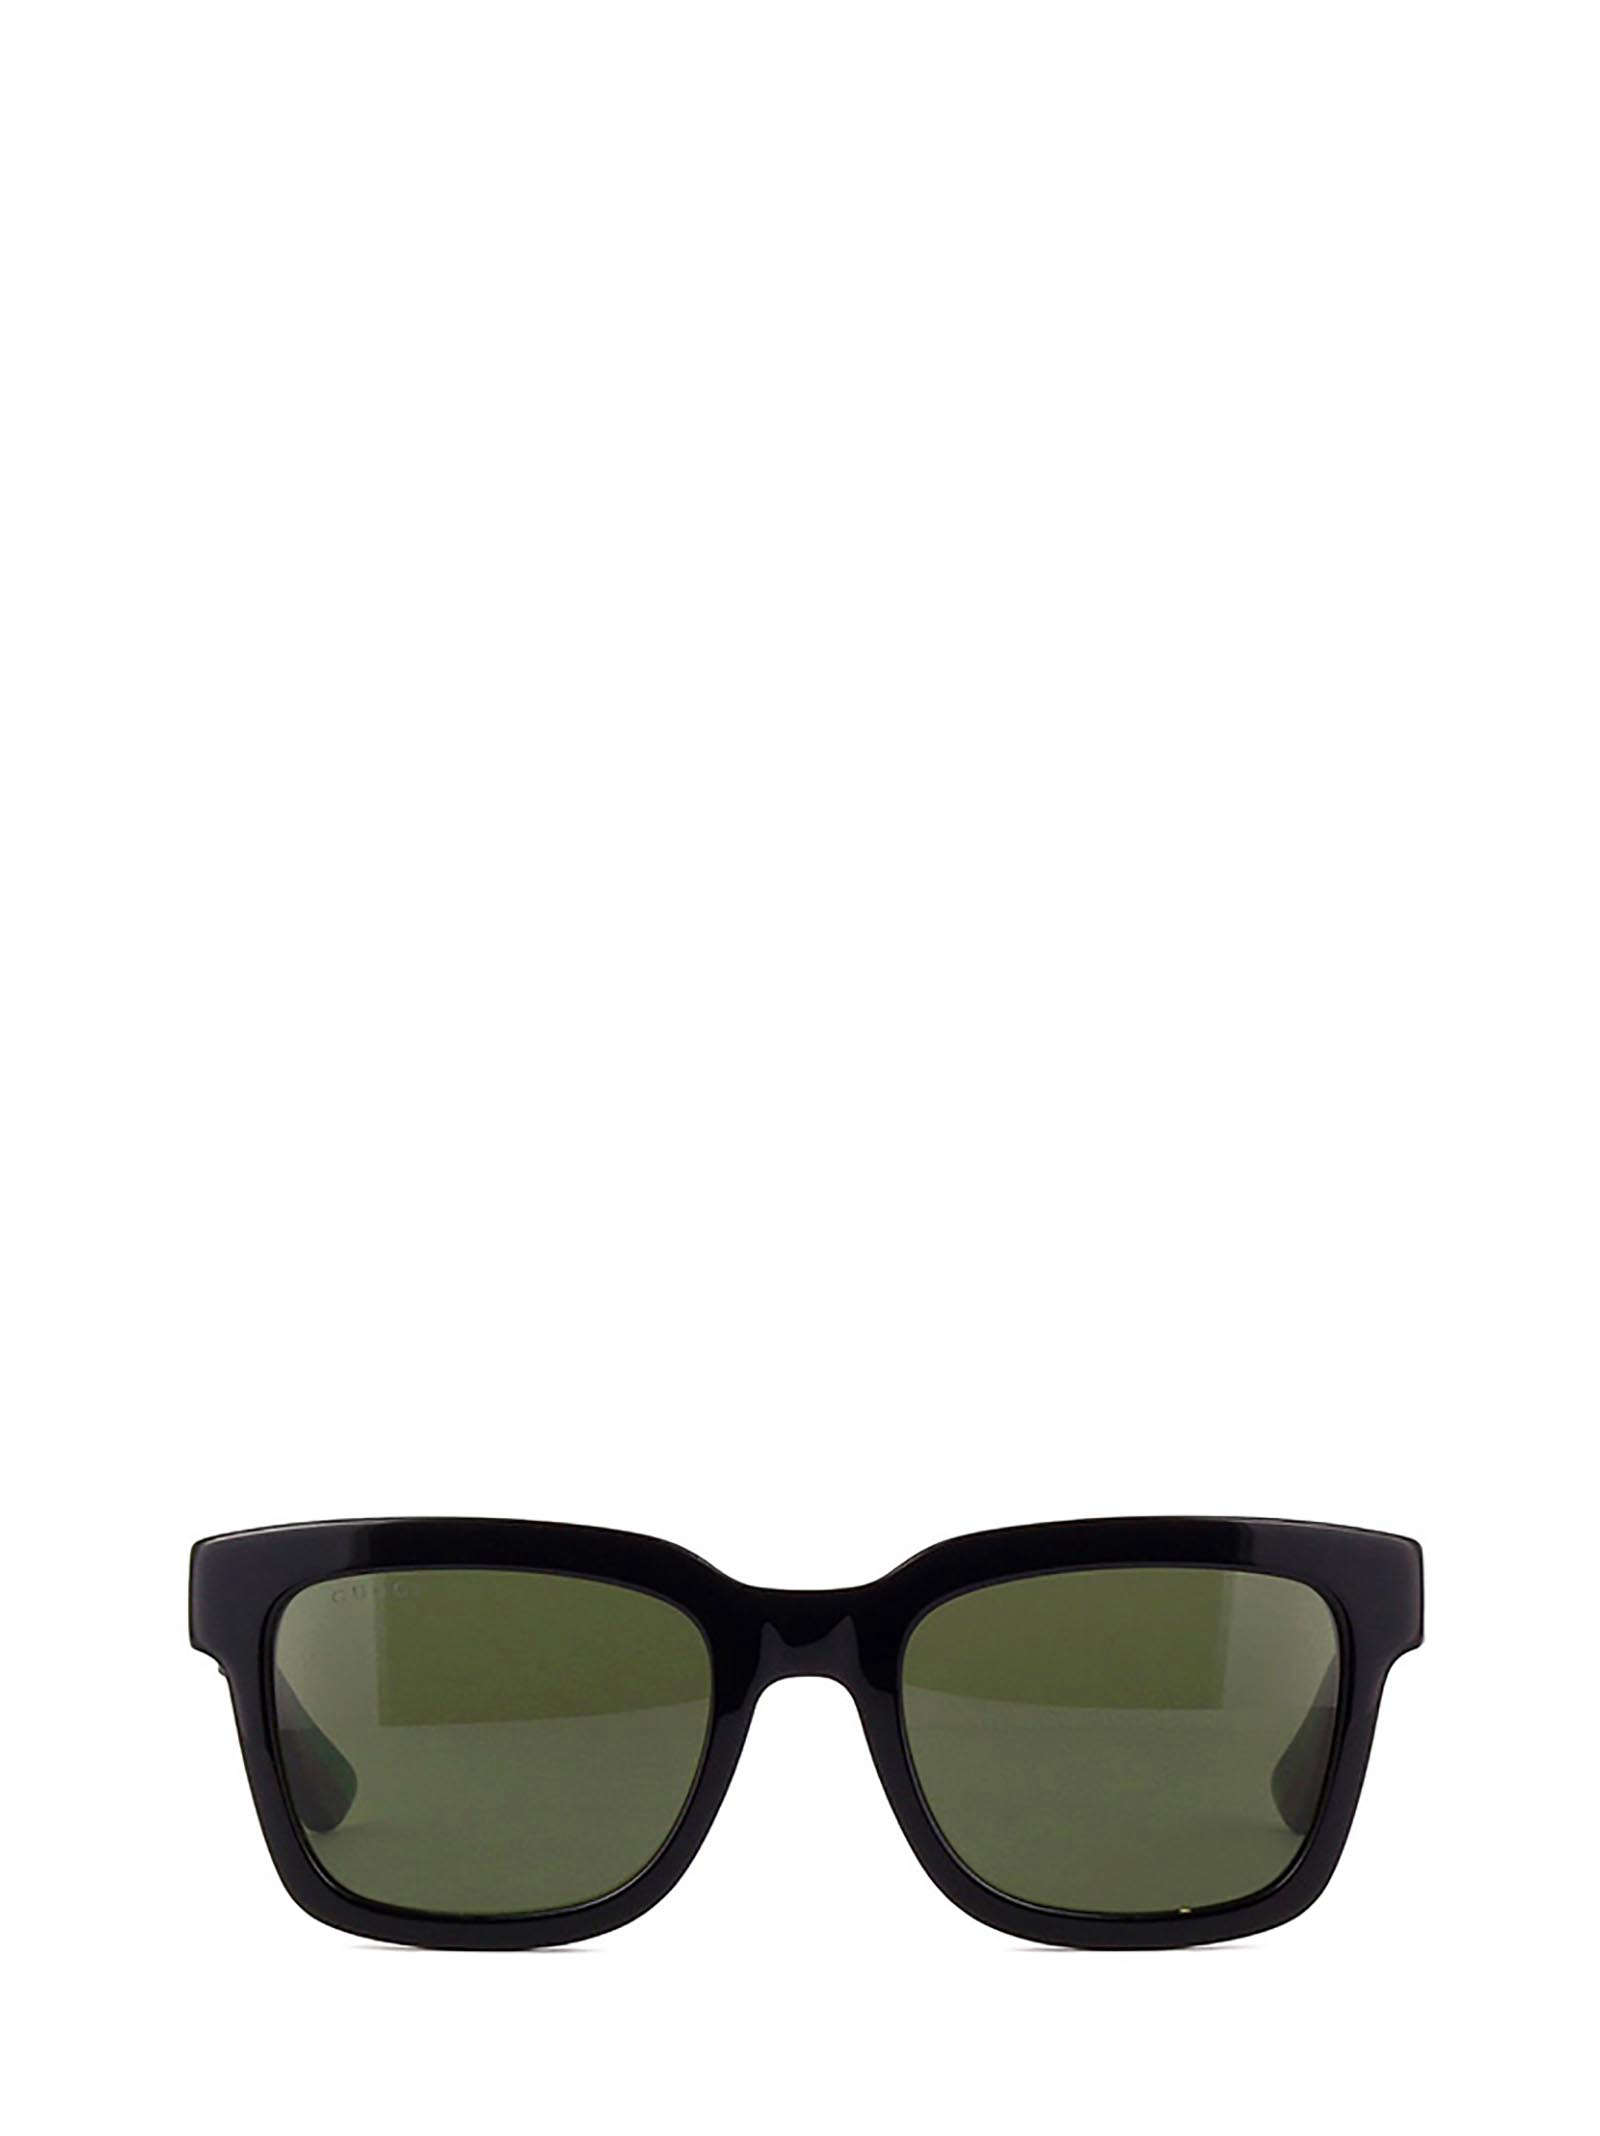 Gucci Gg0001s Black Sunglasses